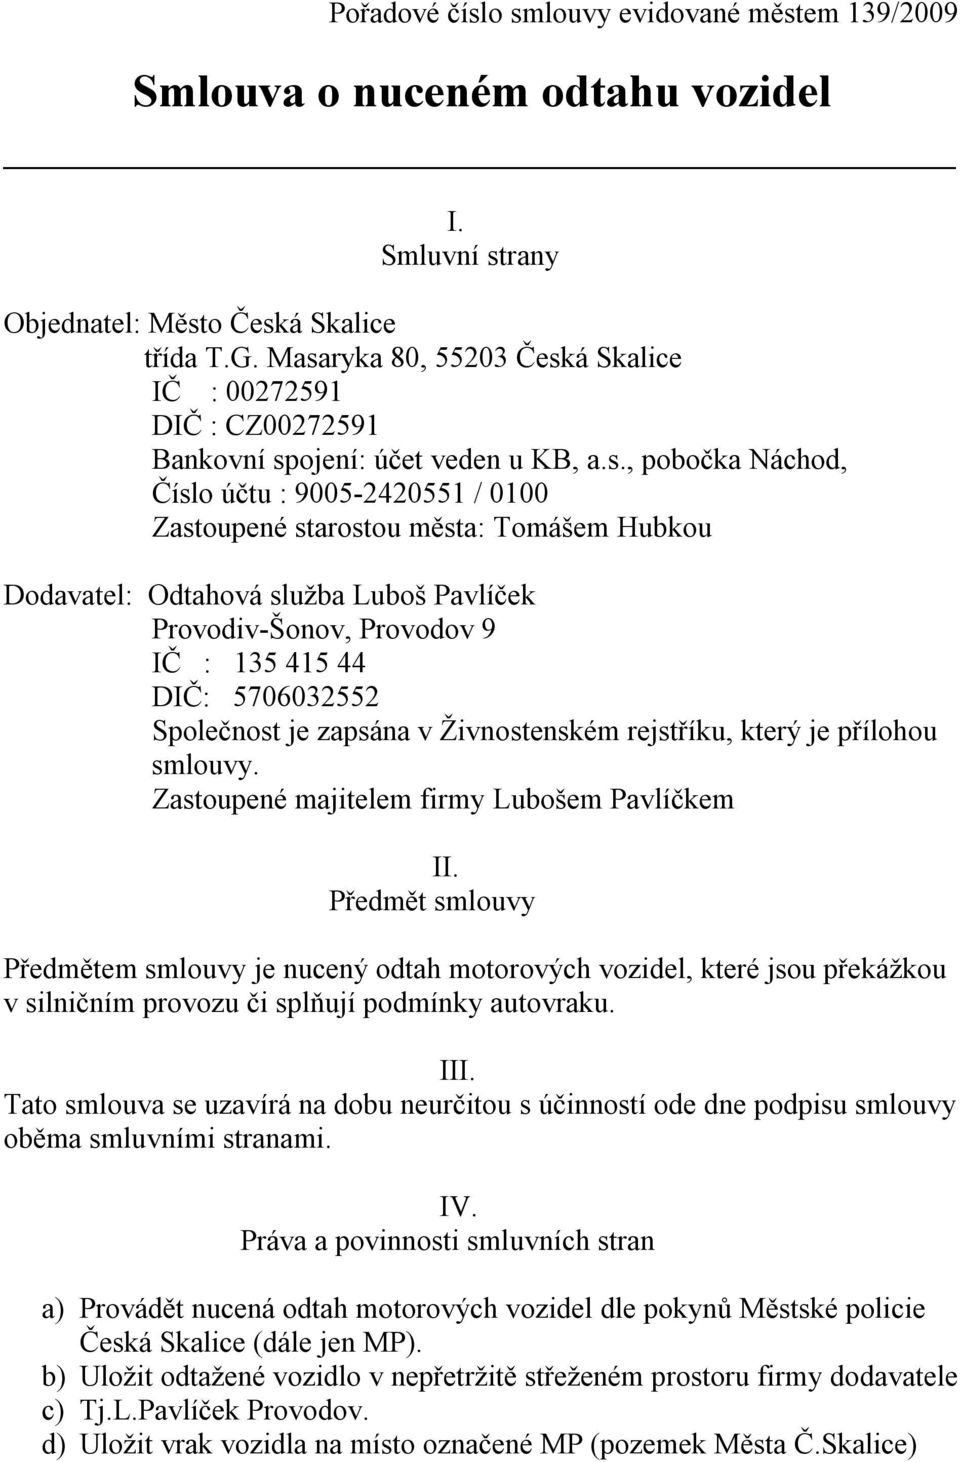 Dodavatel: Odtahová služba Luboš Pavlíček Provodiv-Šonov, Provodov 9 IČ : 135 415 44 DIČ: 5706032552 Společnost je zapsána v Živnostenském rejstříku, který je přílohou smlouvy.